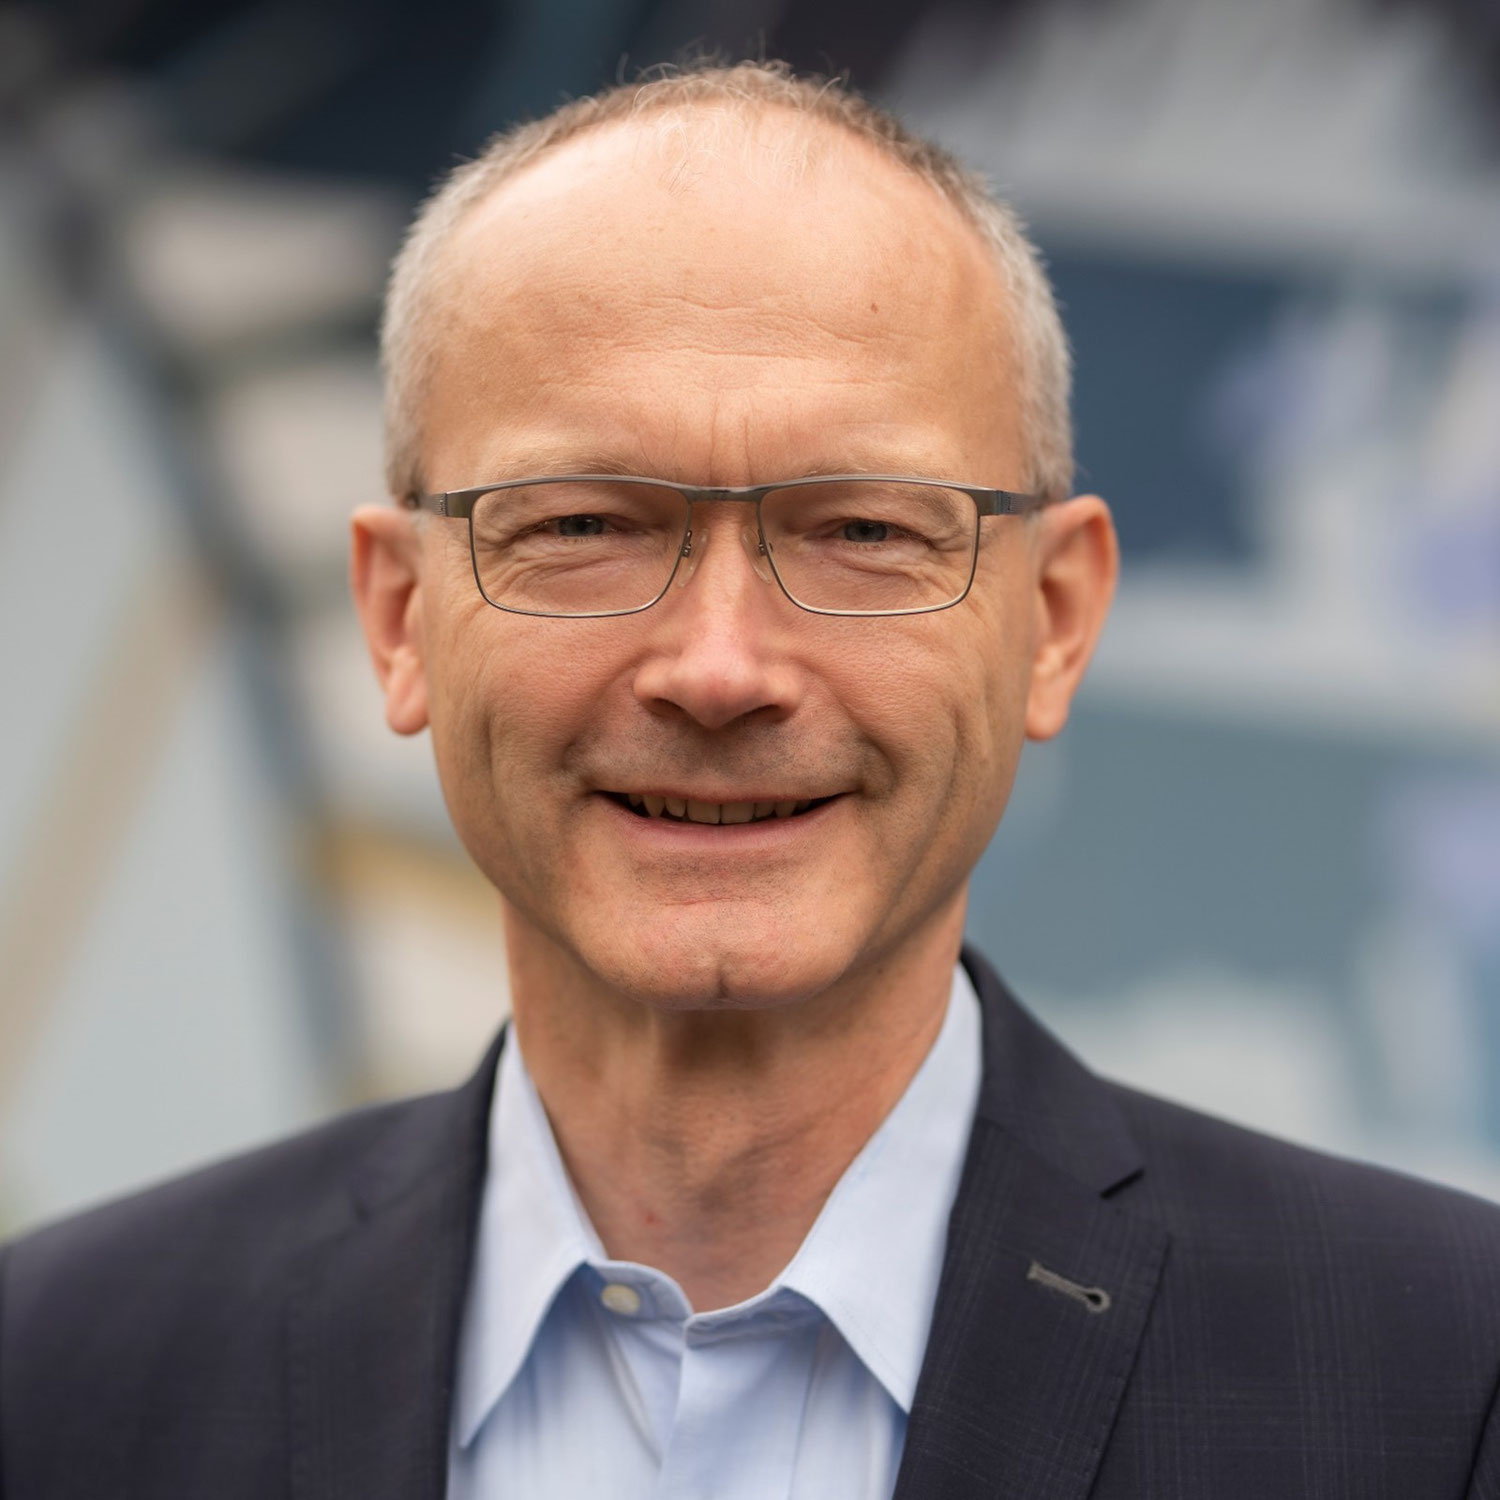 Dr. Helmut Martin zum stellv. Bundesvorsitzenden der CDU-Juristen gewählt